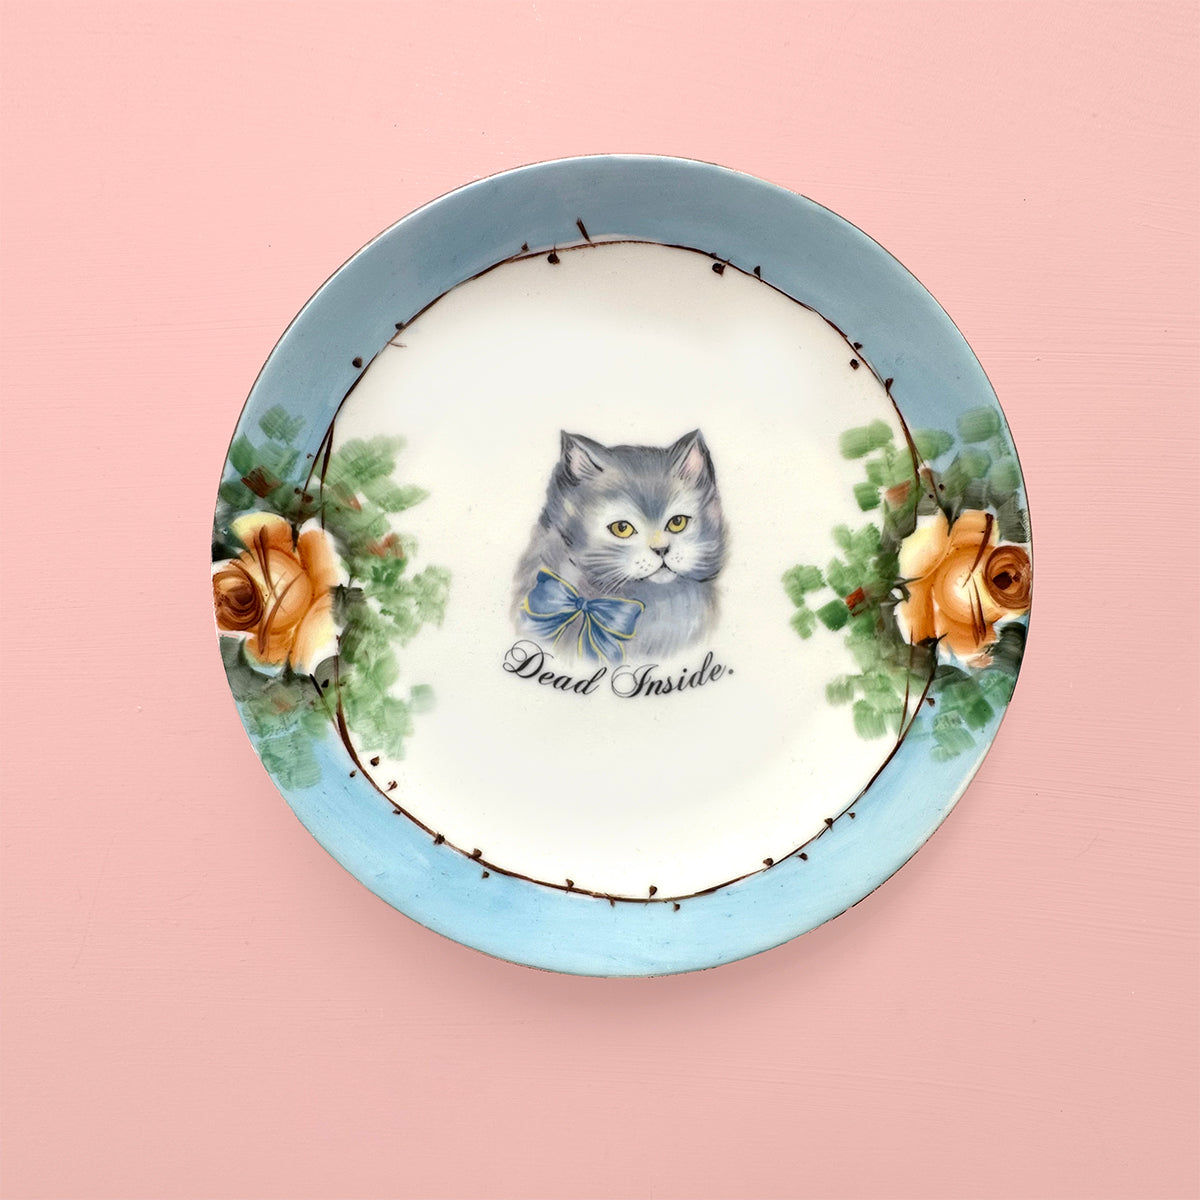 Vintage Art Plate - Cat Art Plate - "Dead Inside."